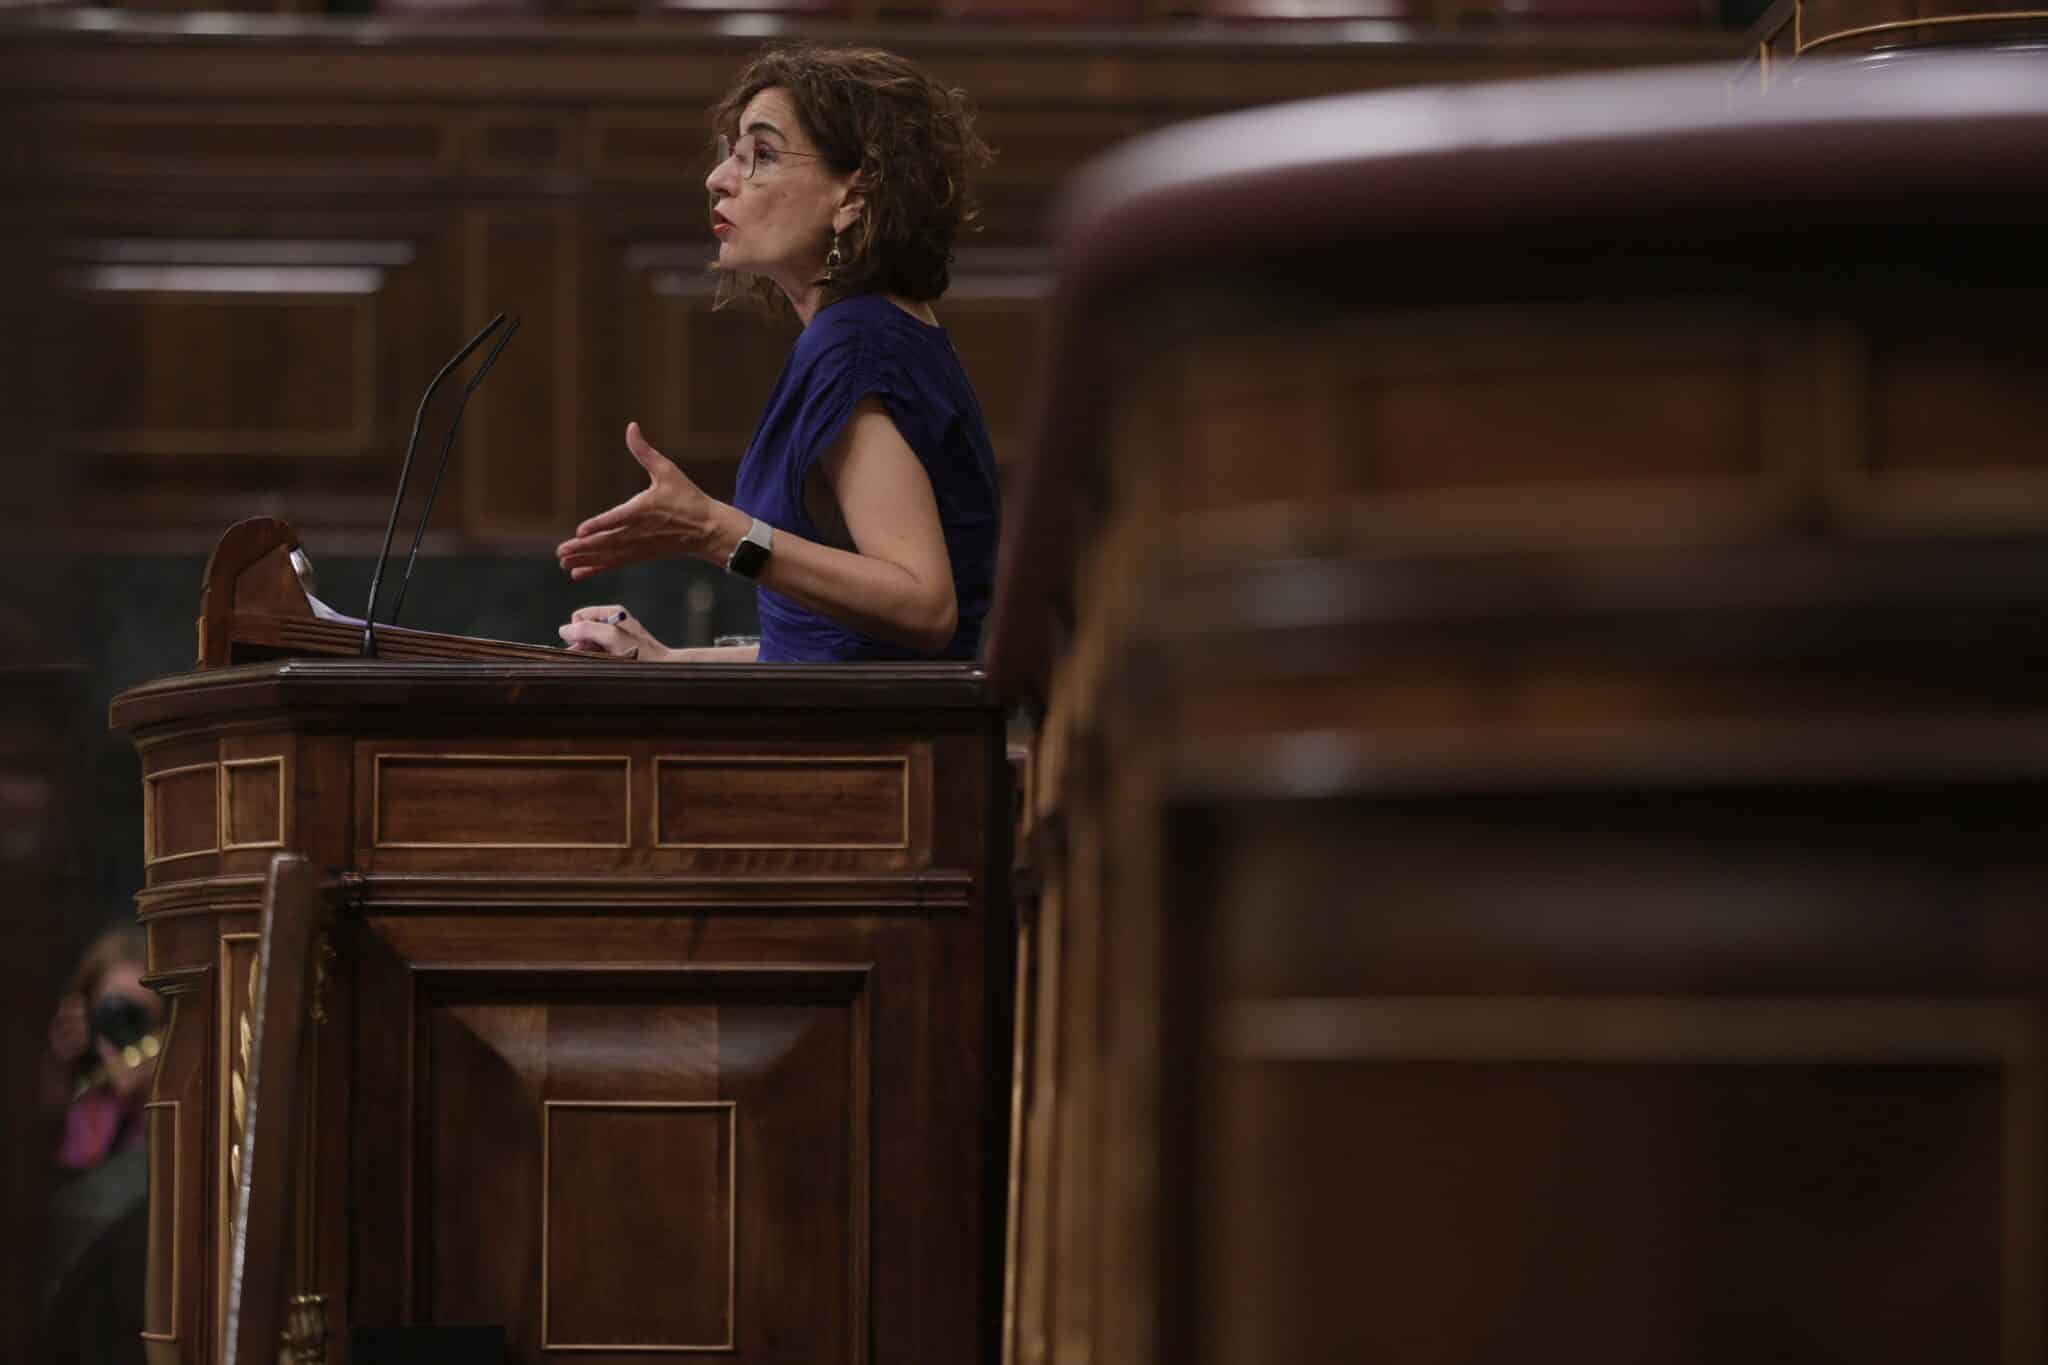 La ministra de Hacienda y Función Pública, María Jesús Montero, interviene en una sesión plenaria en el Congreso de los Diputado